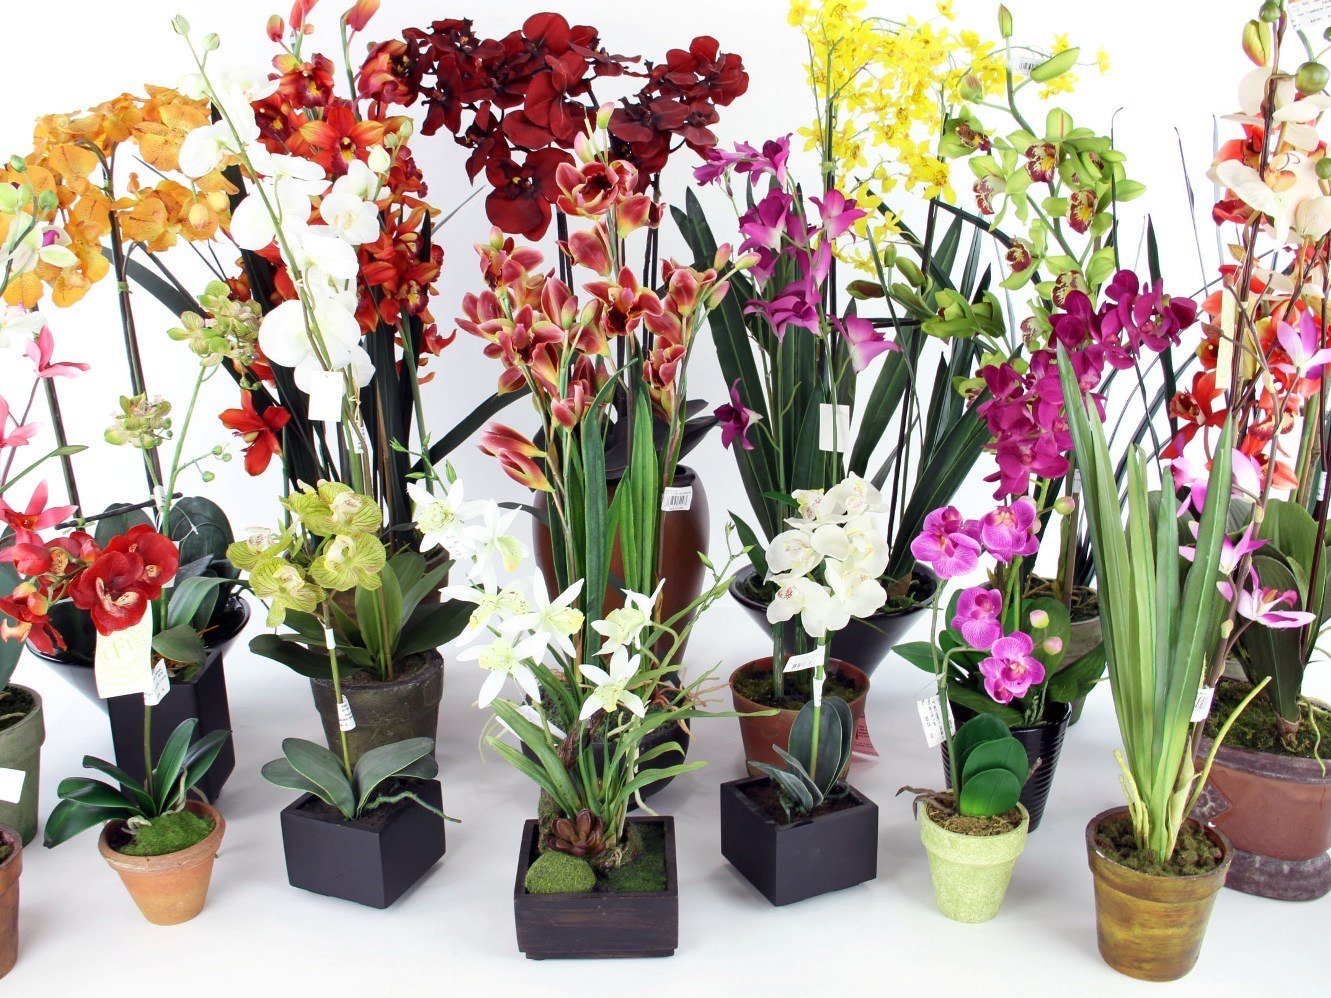 5 популярных сортов орхидеи для домашнего выращивания